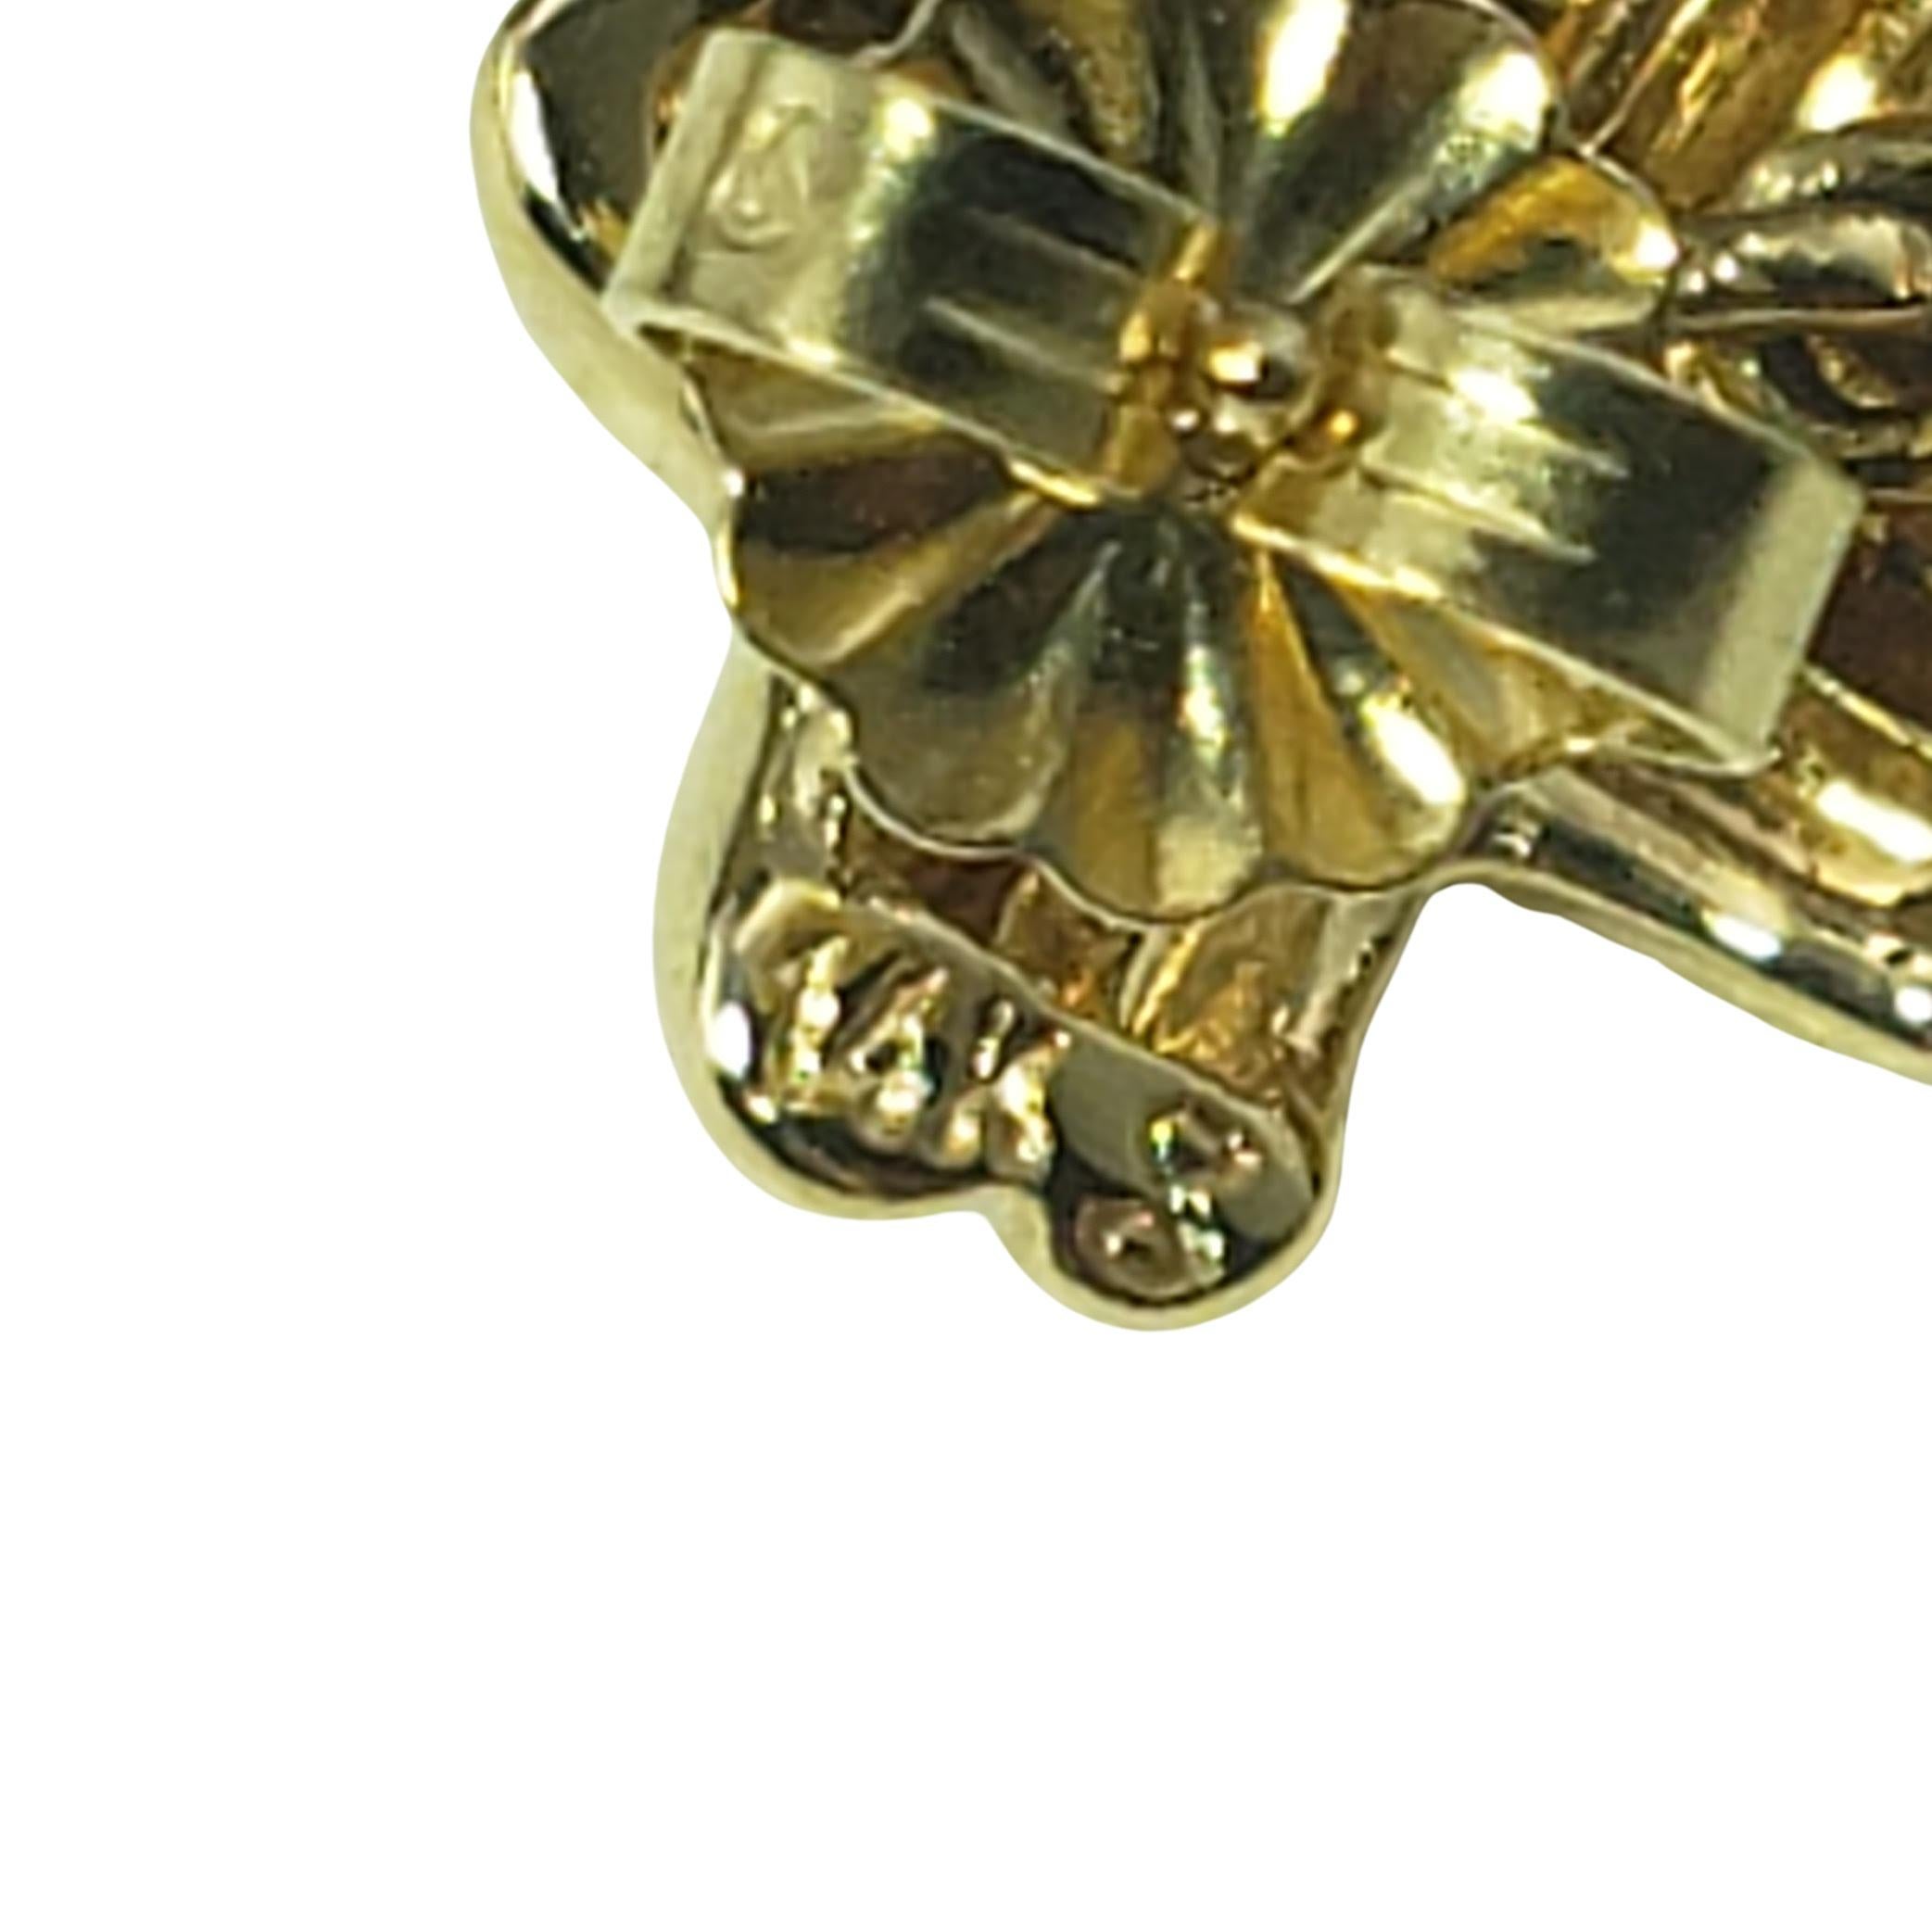 Vintage 14 Karat Gelbgold und Onyx baumeln Ohrringe-

Diese eleganten Ohrringe sind aus schwarzem Onyx und 14 Karat Gelbgold gefertigt. Push-Back-Verschlüsse.

Größe: 35 mm x 8 mm

Gewicht: 4,6 dwt. / 7,2 gr.

Gestempelt: 14K

Sehr guter Zustand,